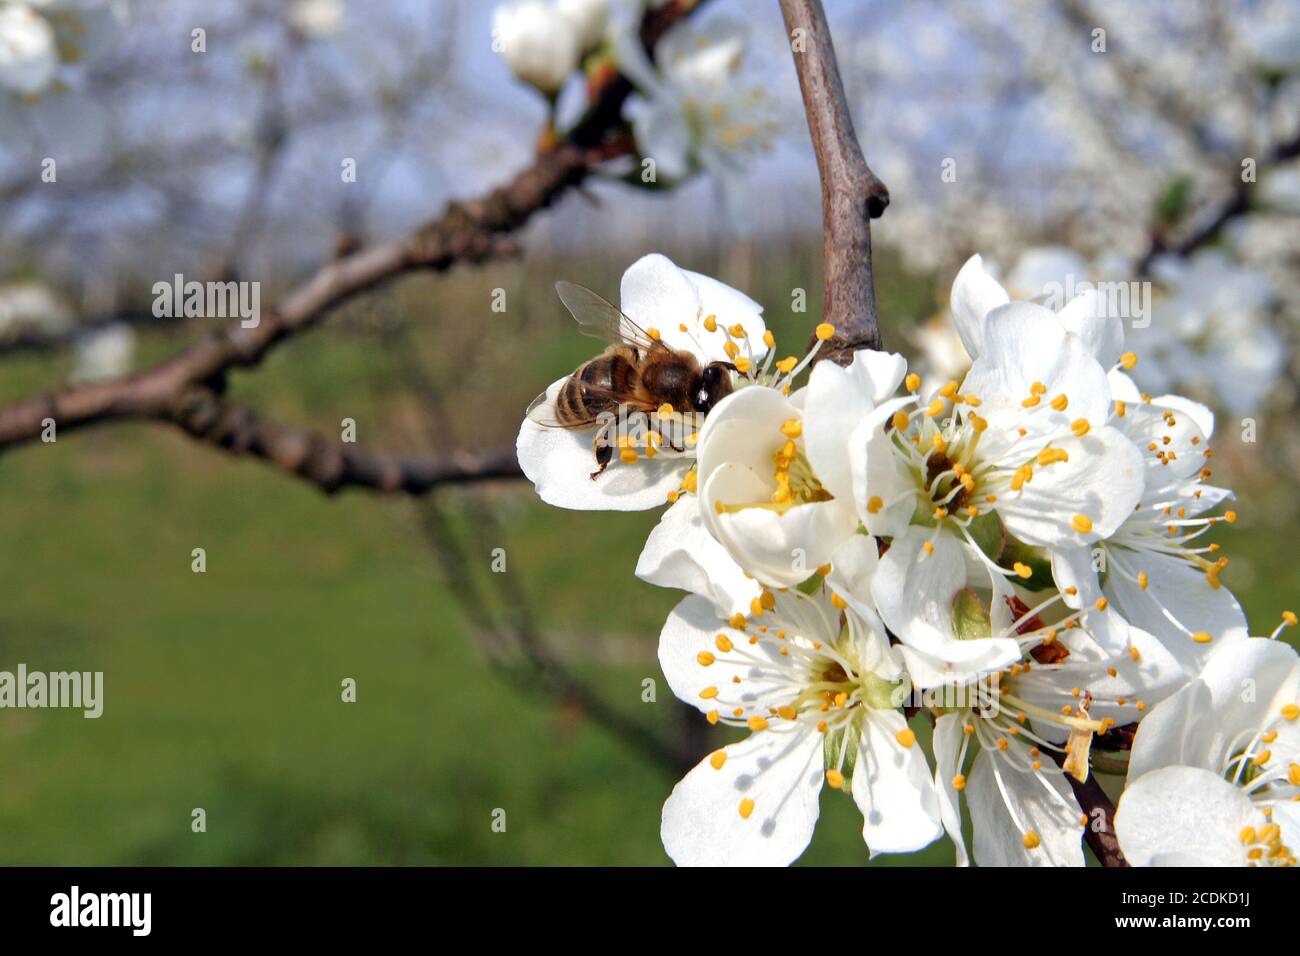 fruit tree blossom Stock Photo